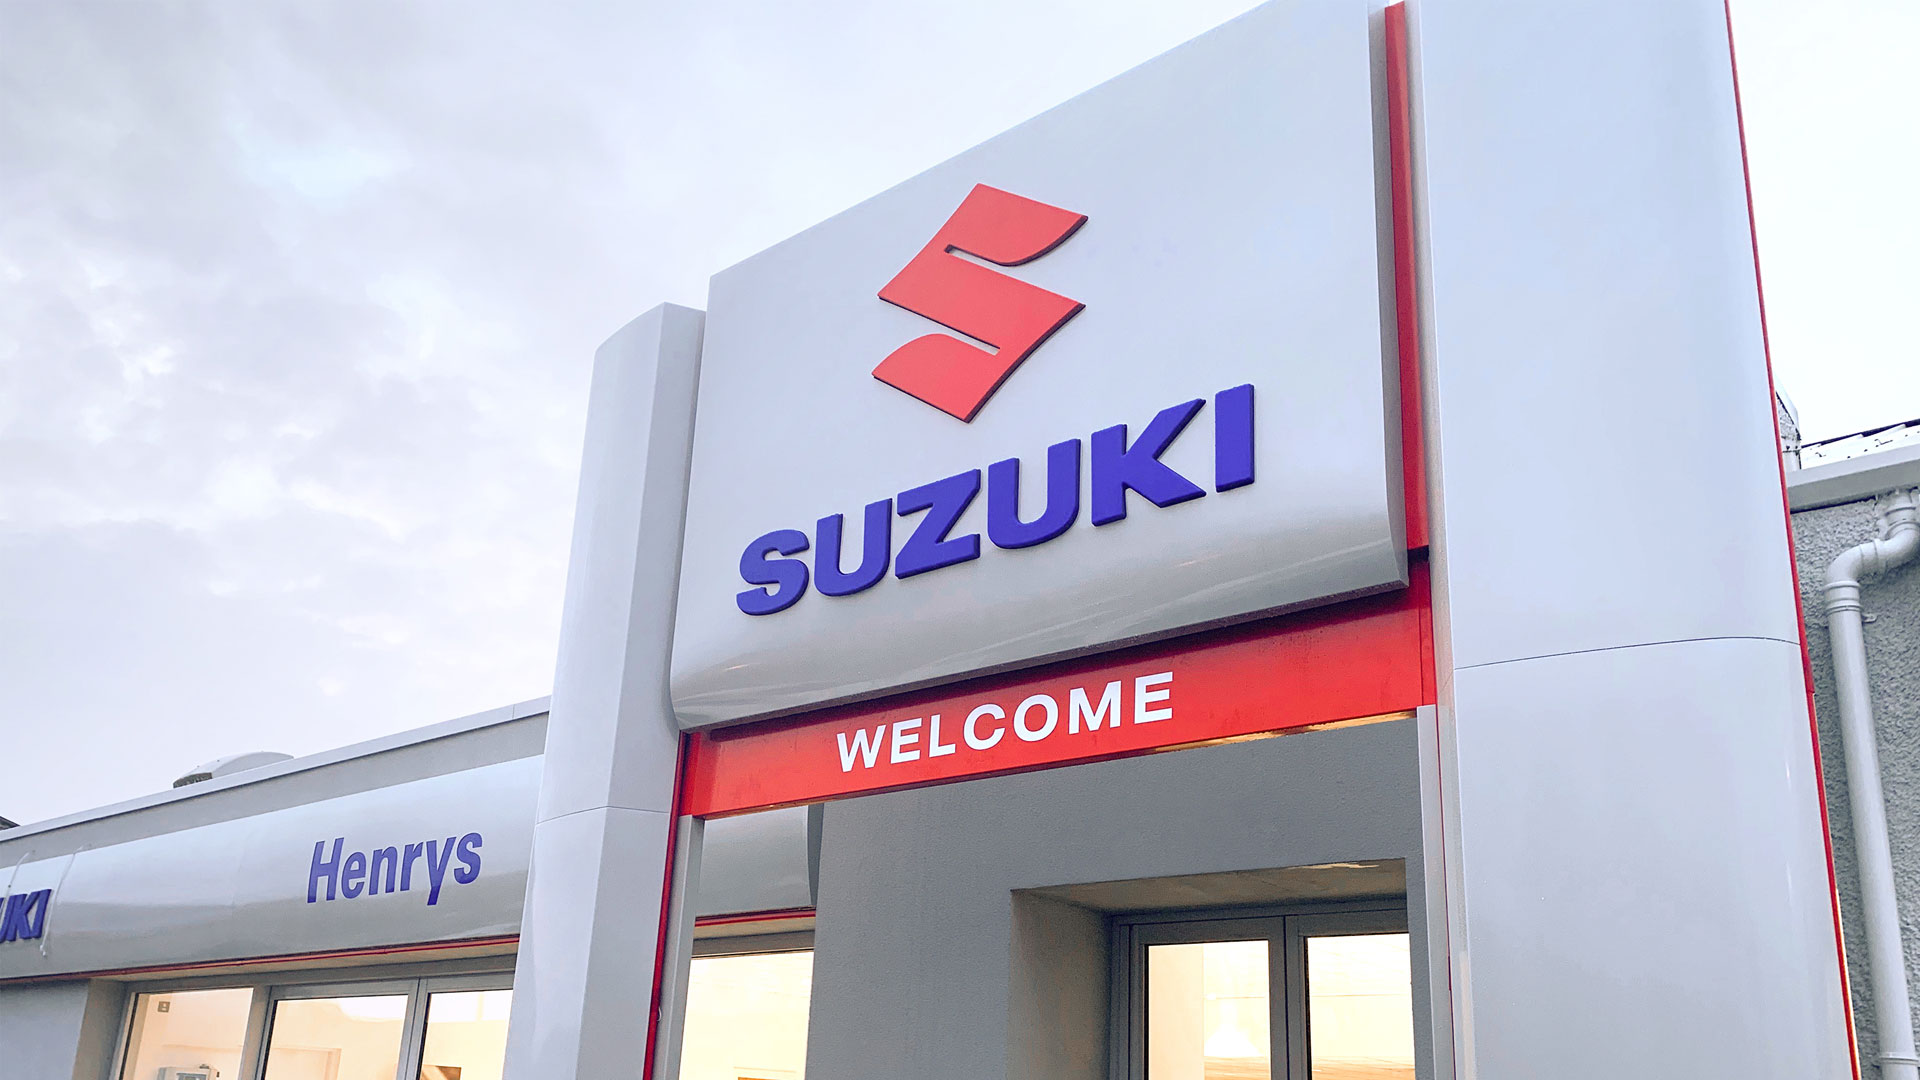 Suzuki dealer